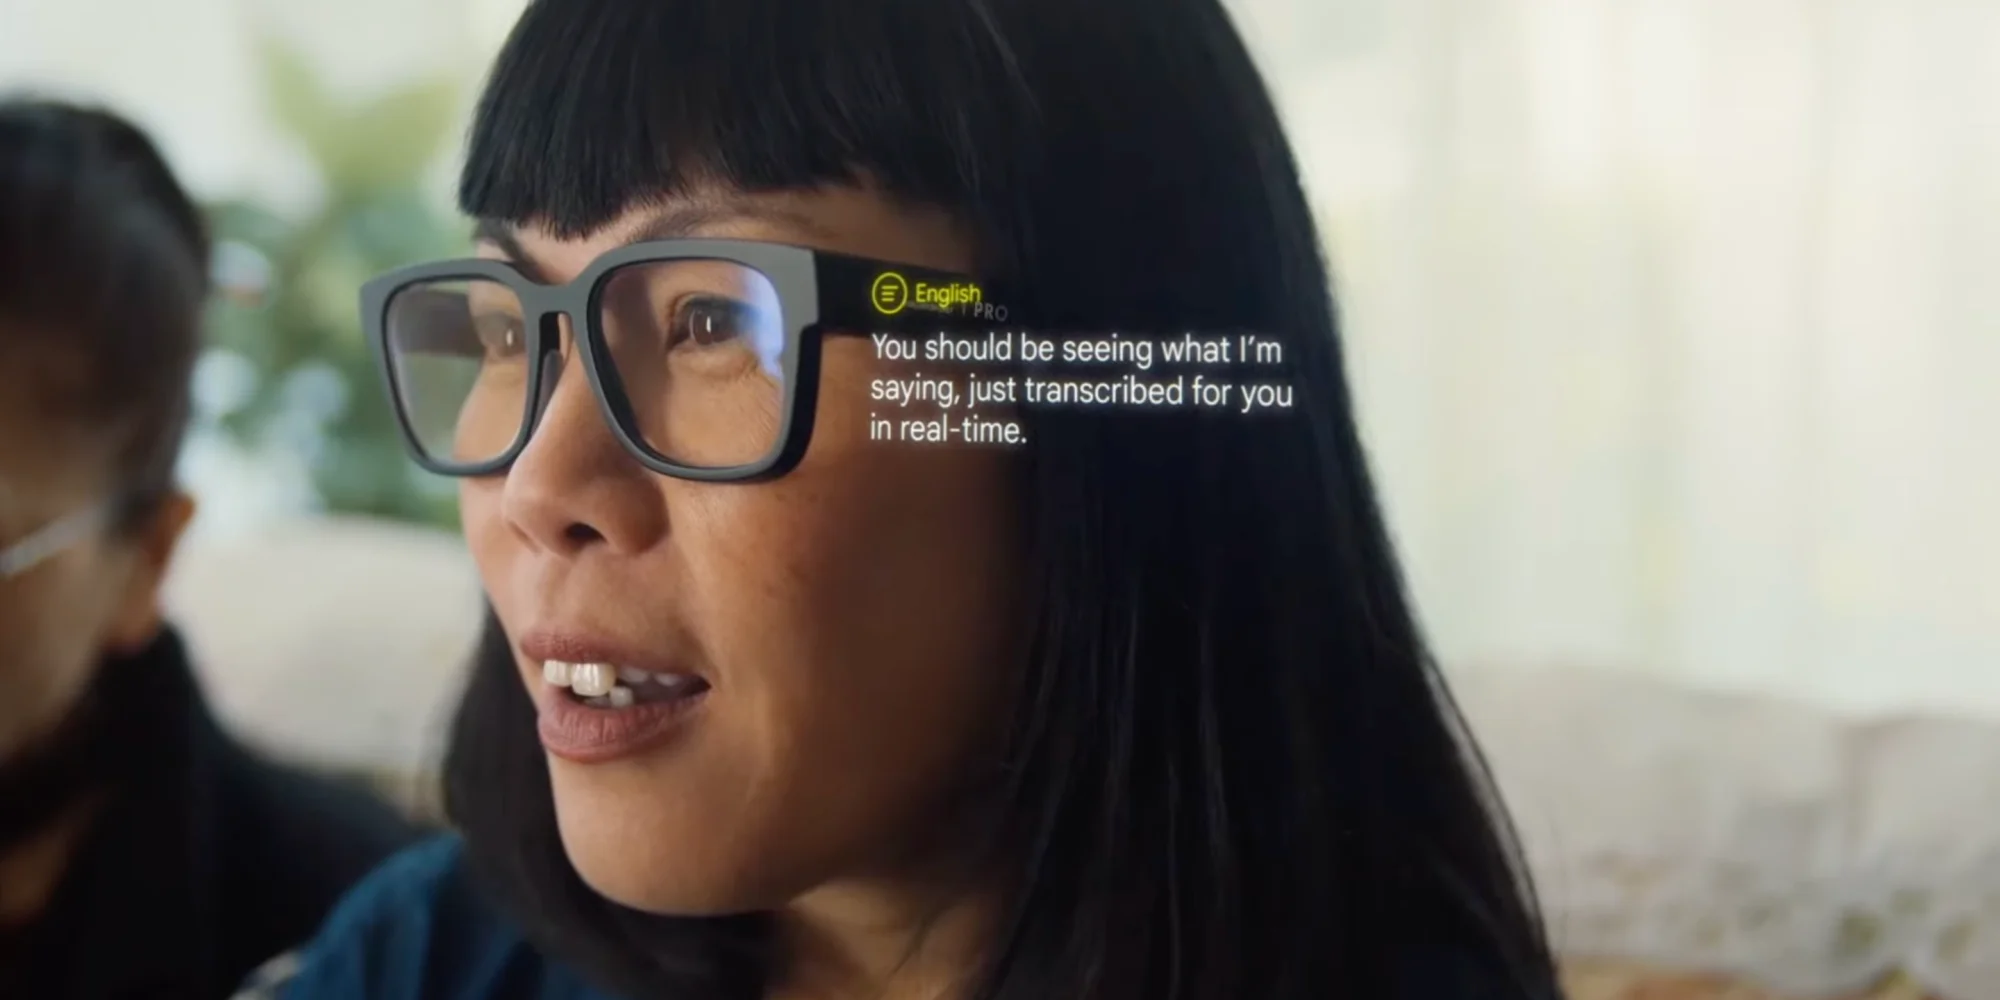 Google продемонстрировала AR-очки с функцией перевода речи собеседника